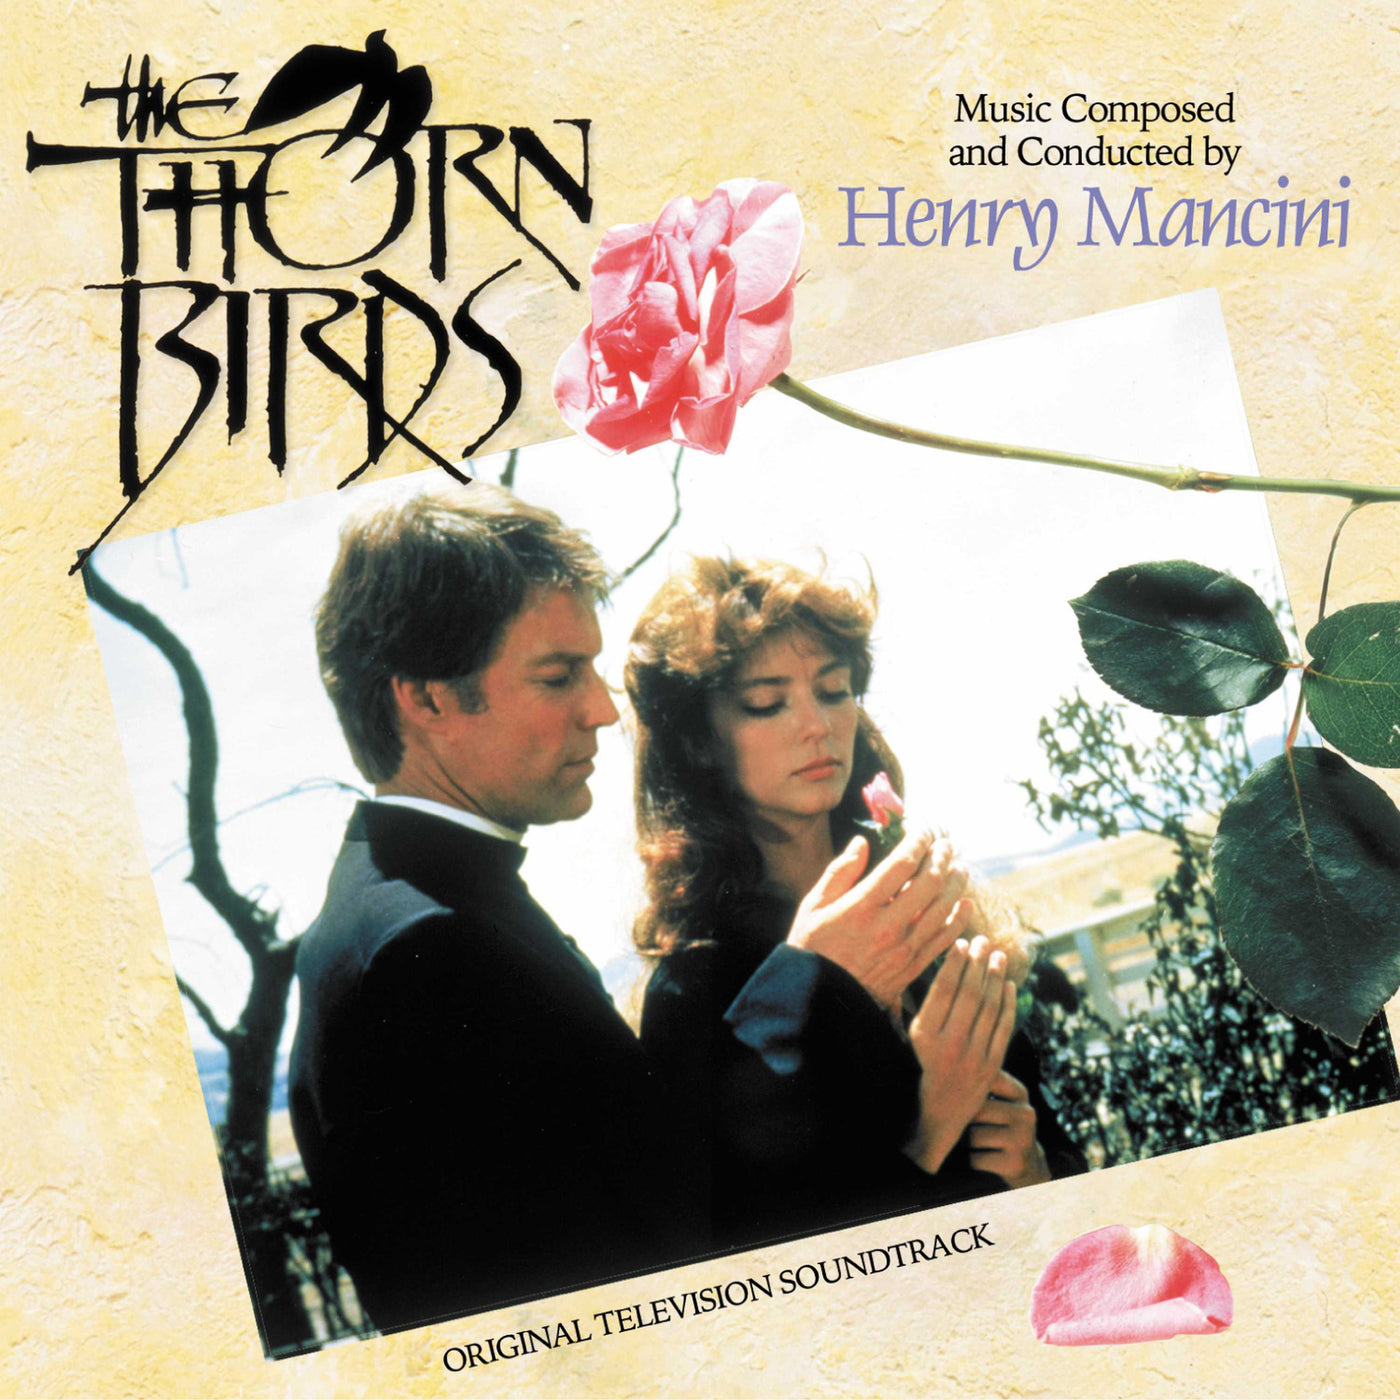 Thorn Birds, The (CD)